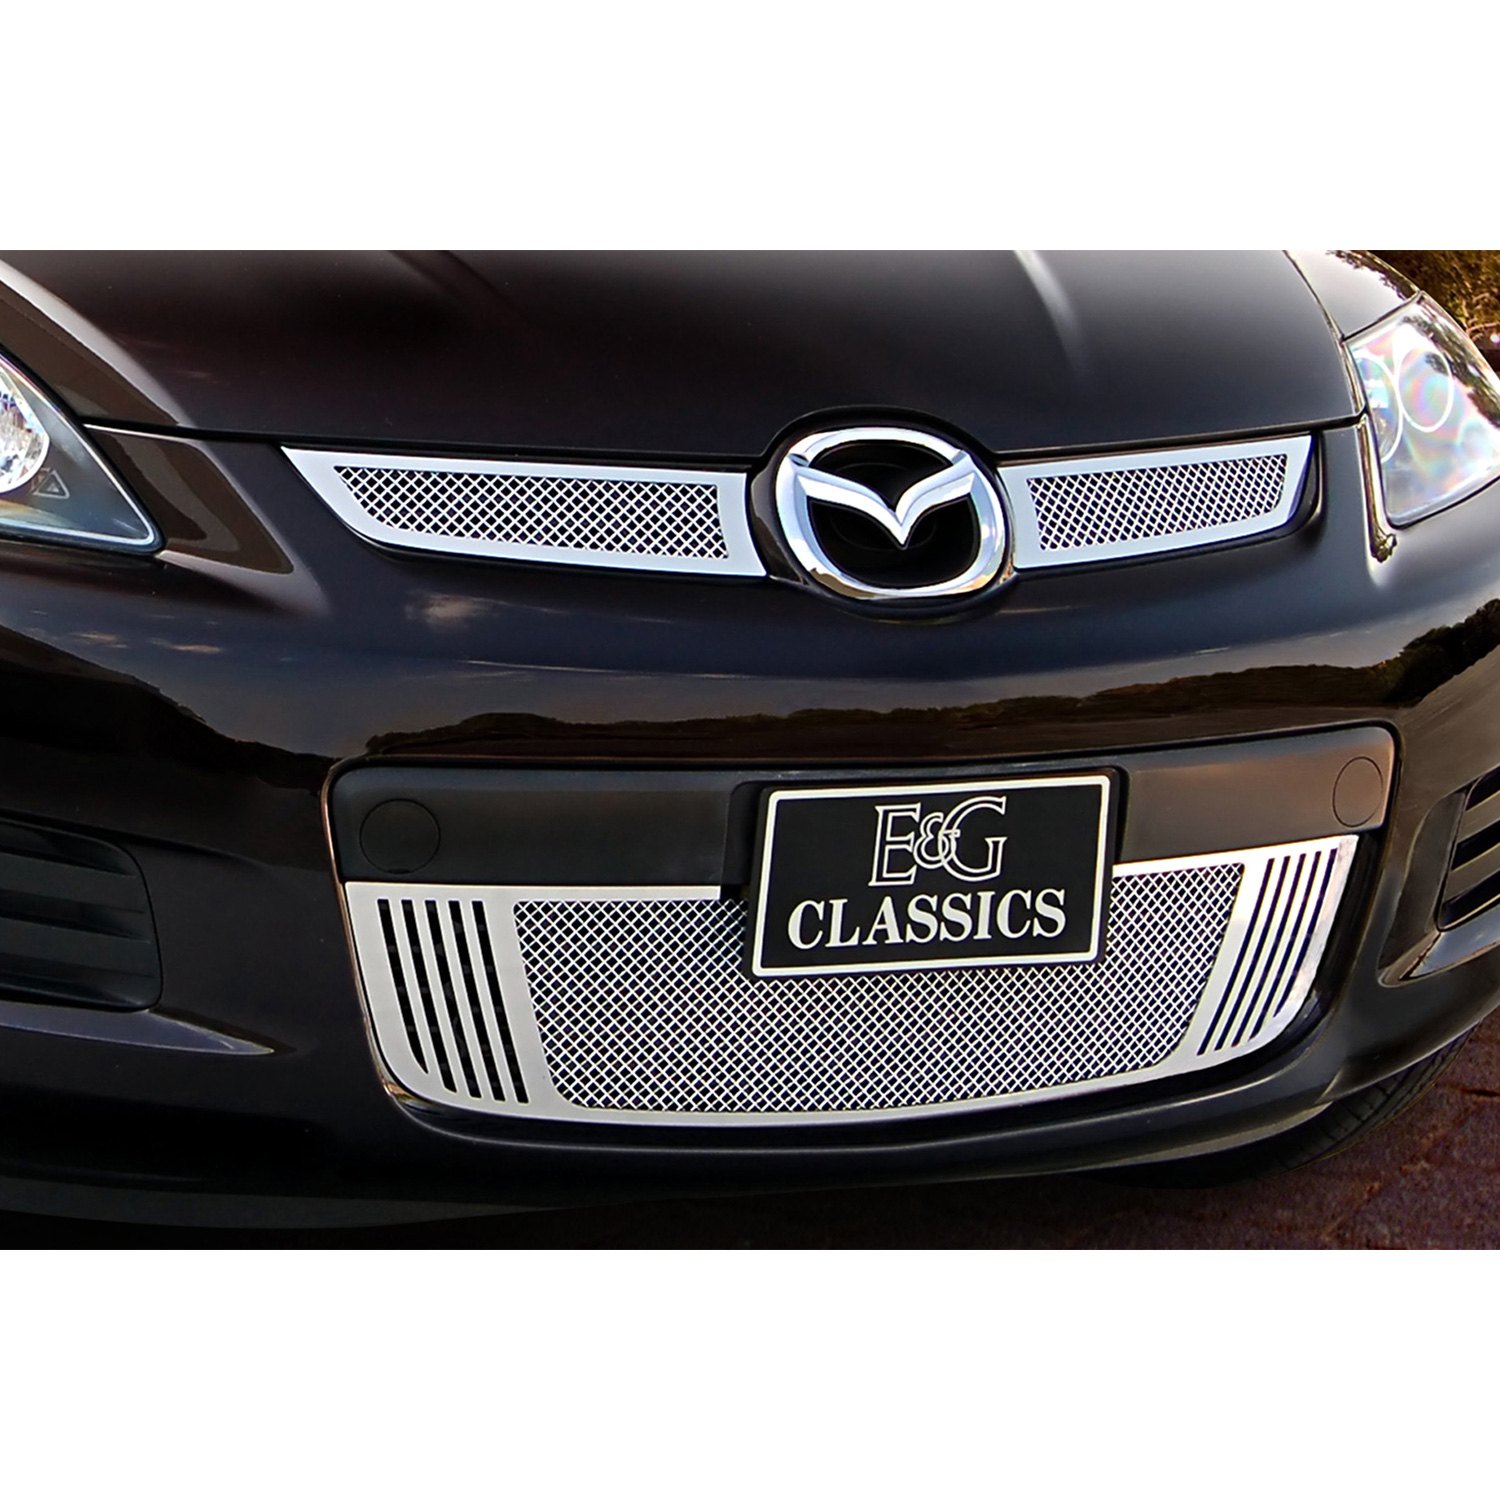 Eandg Classics® 1387 0102 07 Mazda Cx 7 2007 3 Pc Chrome Fine Mesh Main